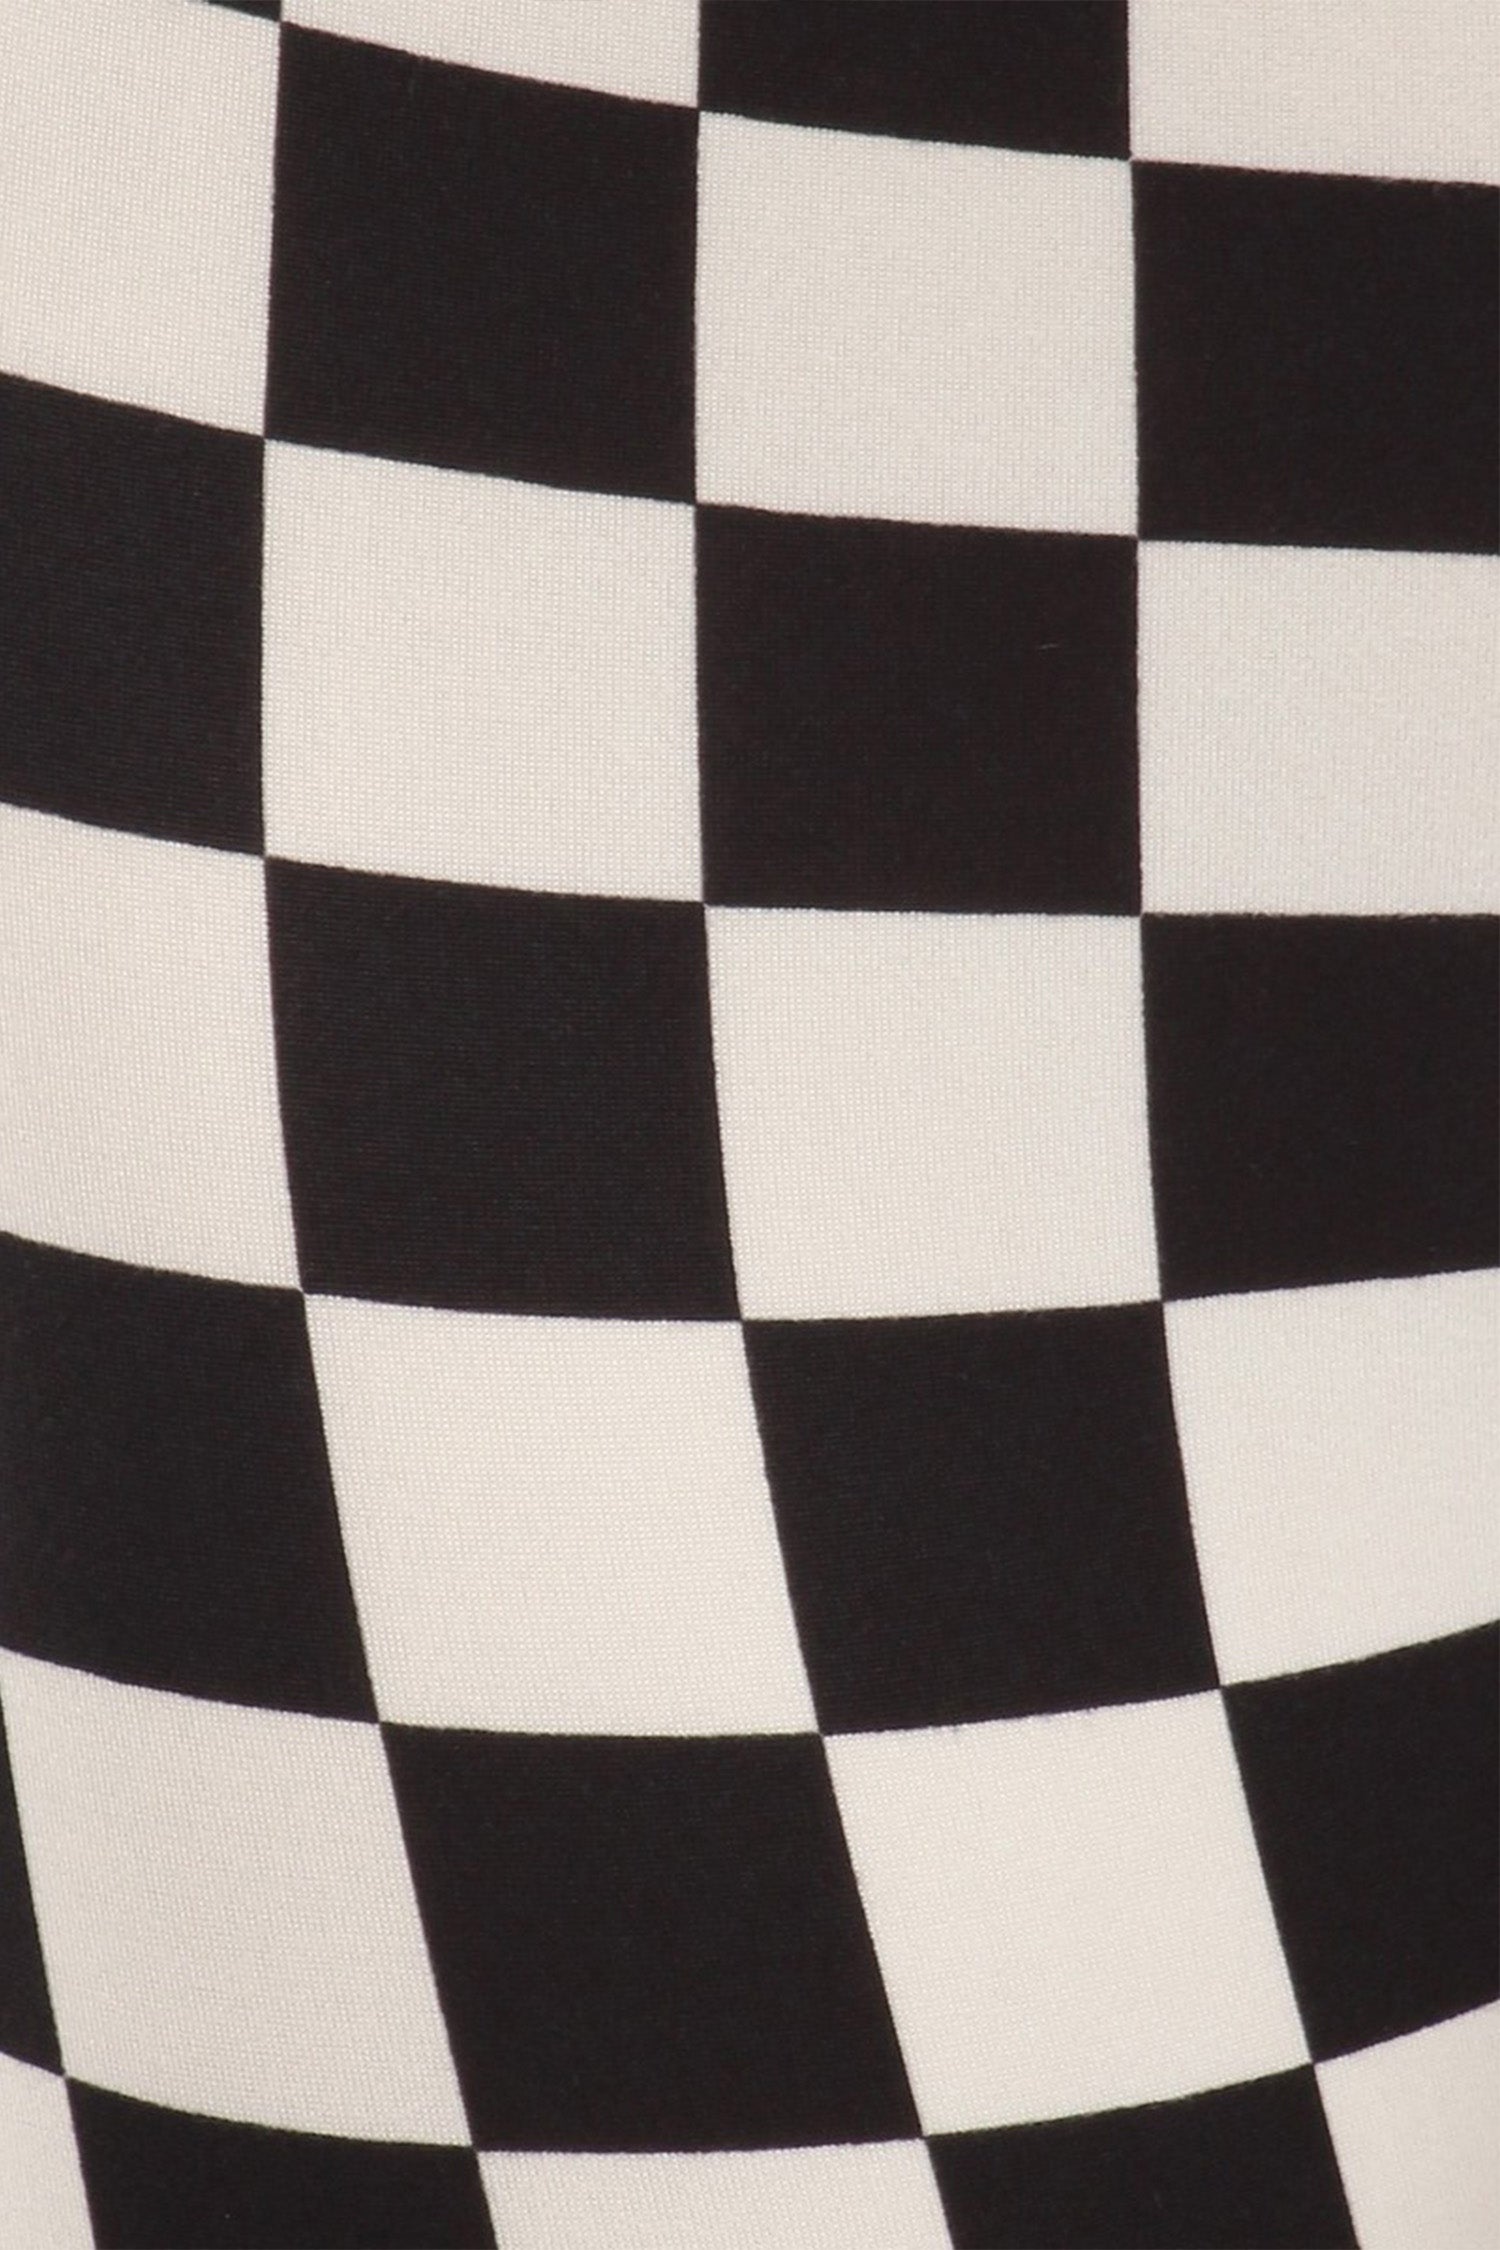 Checkered Black White